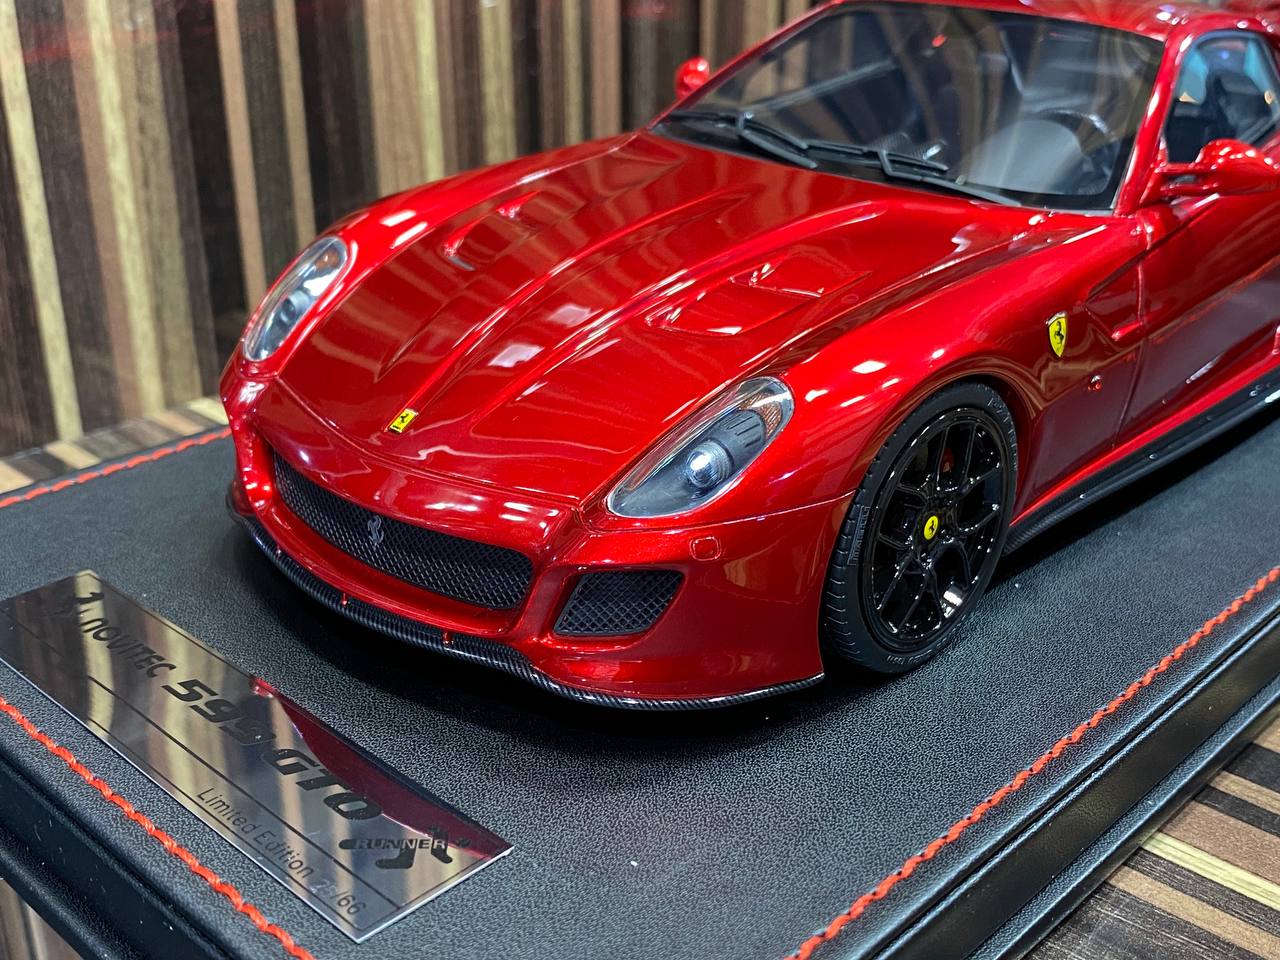 1/18 Ferrari Novitec 599 GTO Red Runner|Sold in Dturman.com Dubai UAE.